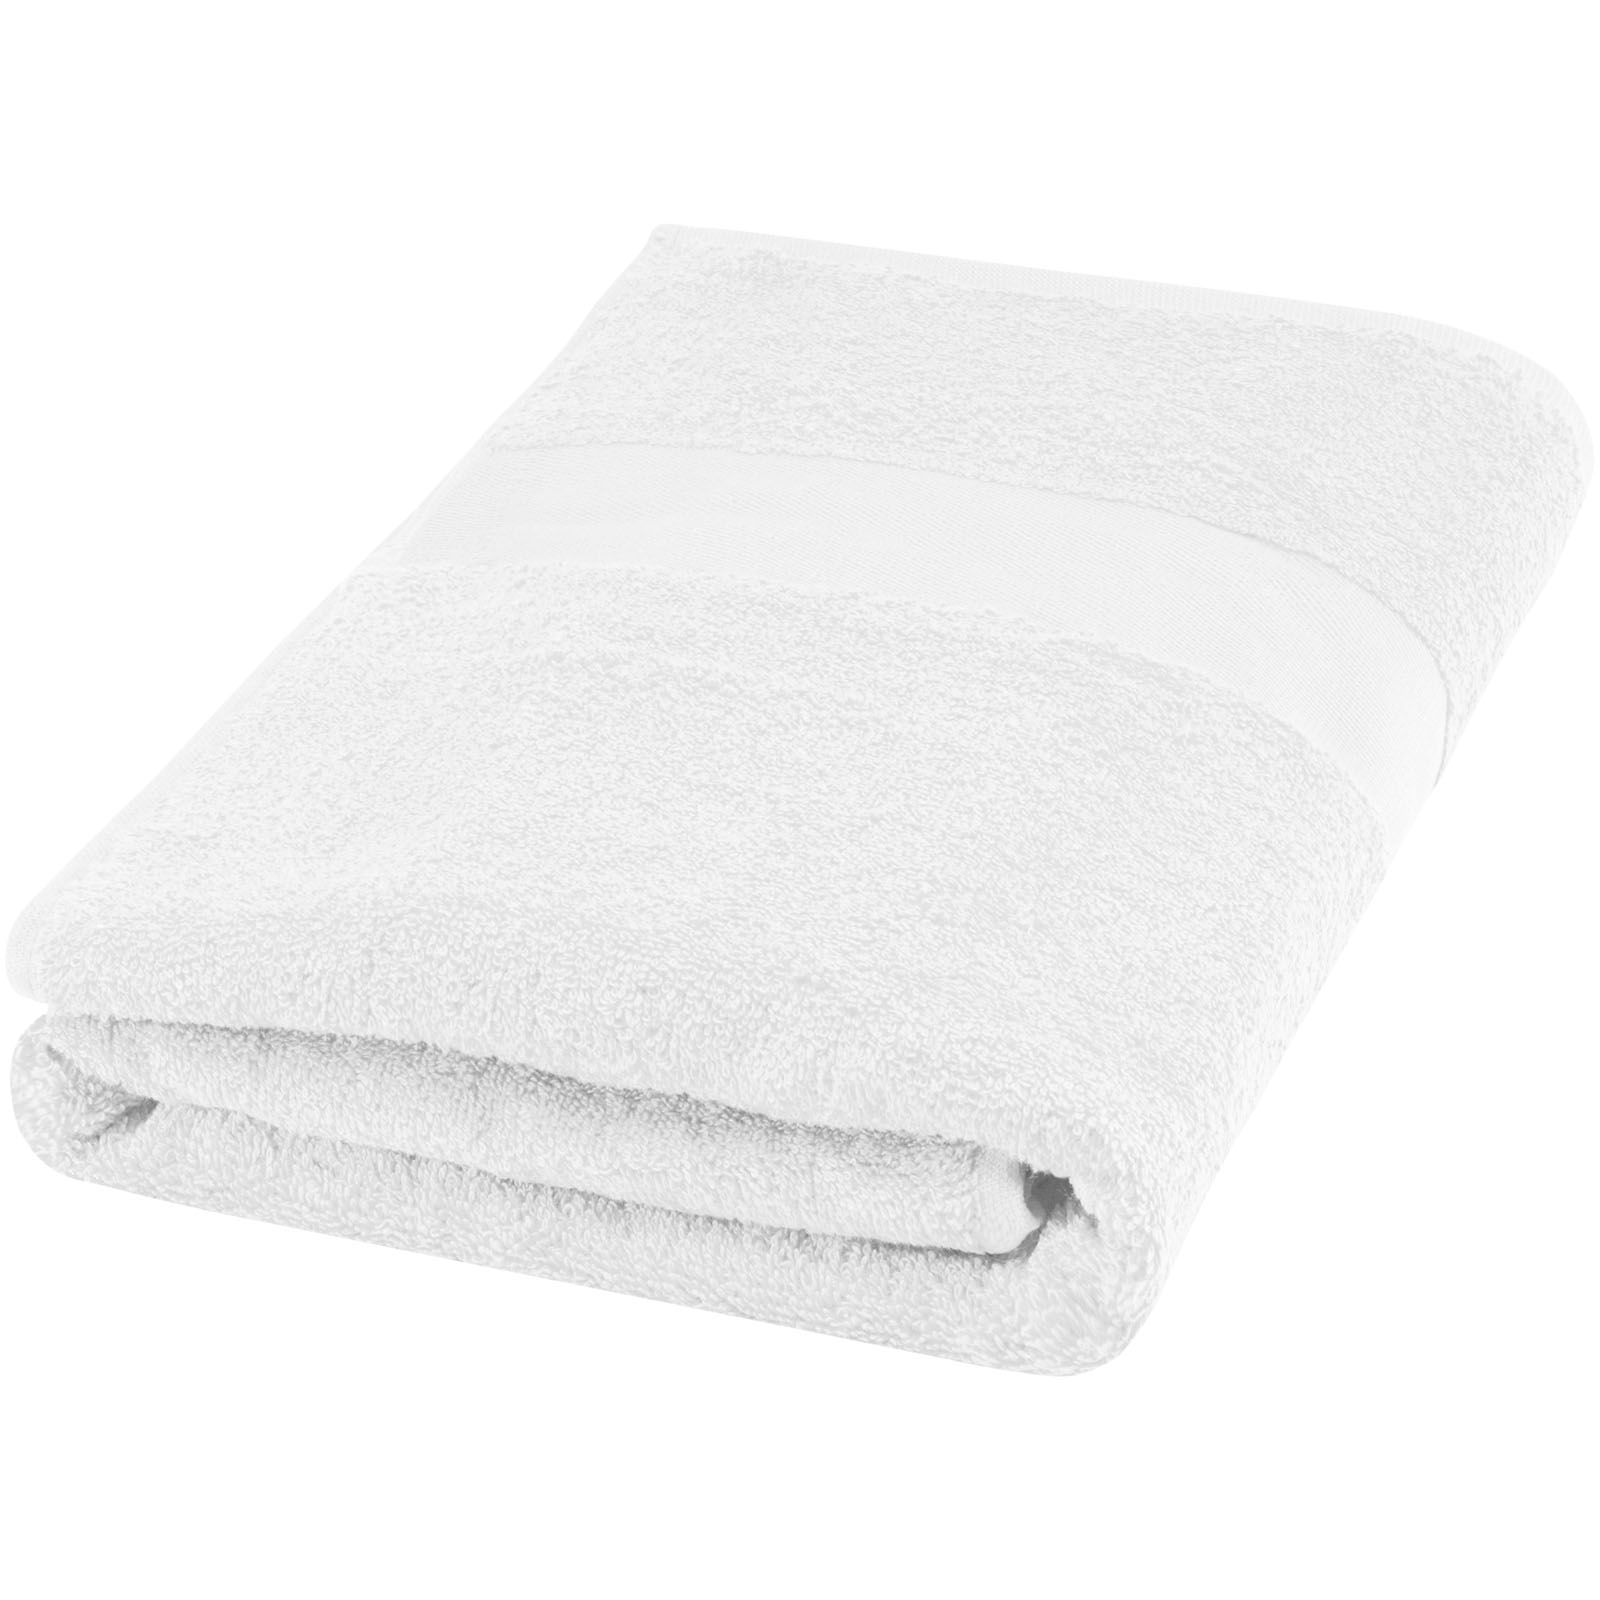 Advertising Towels - Amelia 450 g/m² cotton towel 70x140 cm - 0